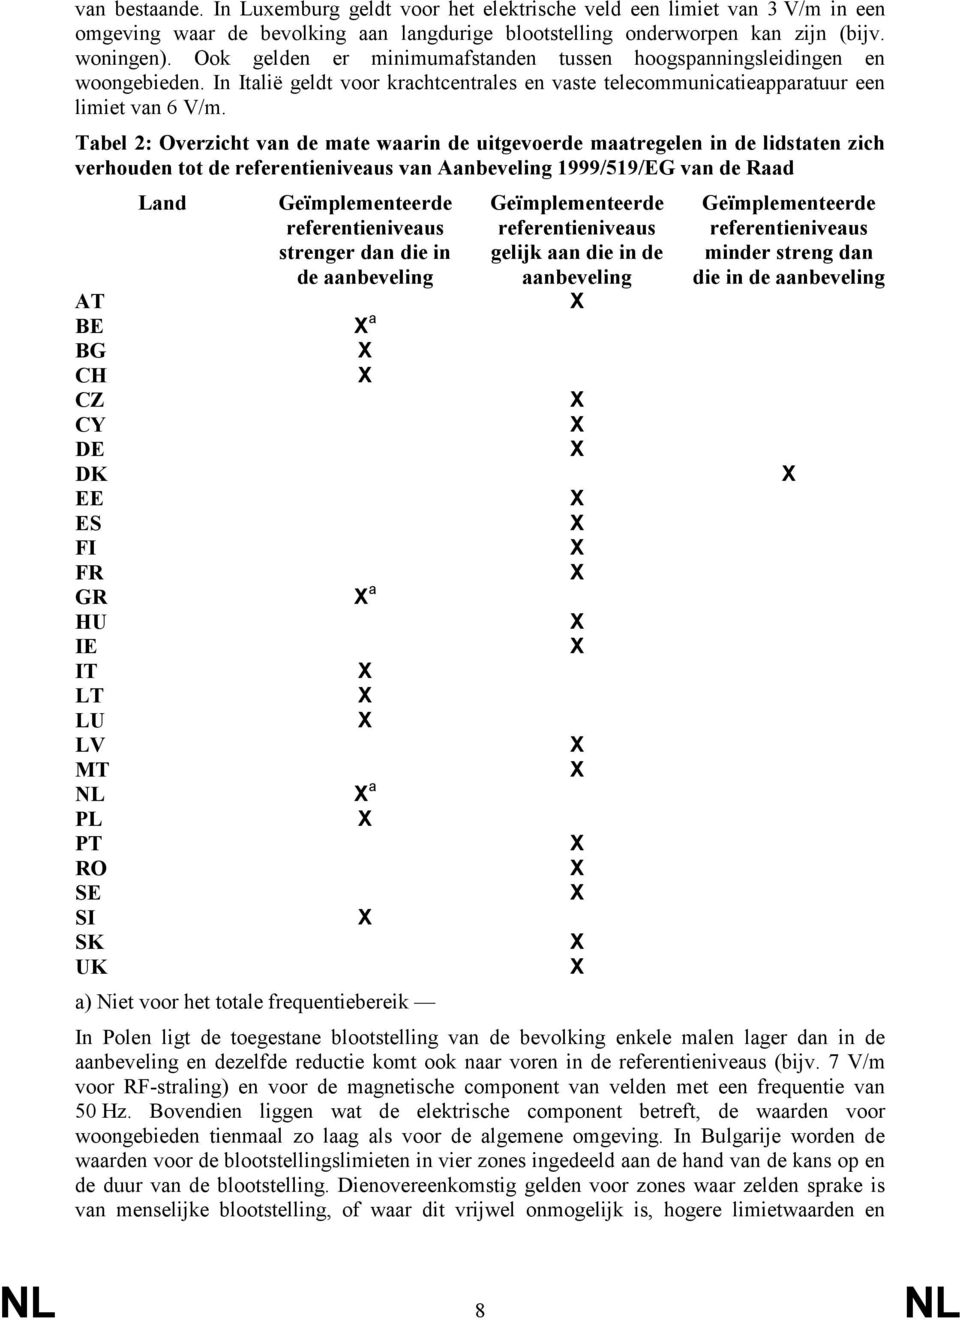 Tabel 2: Overzicht van de mate waarin de uitgevoerde maatregelen in de lidstaten zich verhouden tot de referentieniveaus van Aanbeveling 1999/519/EG van de Raad AT BE BG CH CZ CY DE DK EE ES FI FR GR